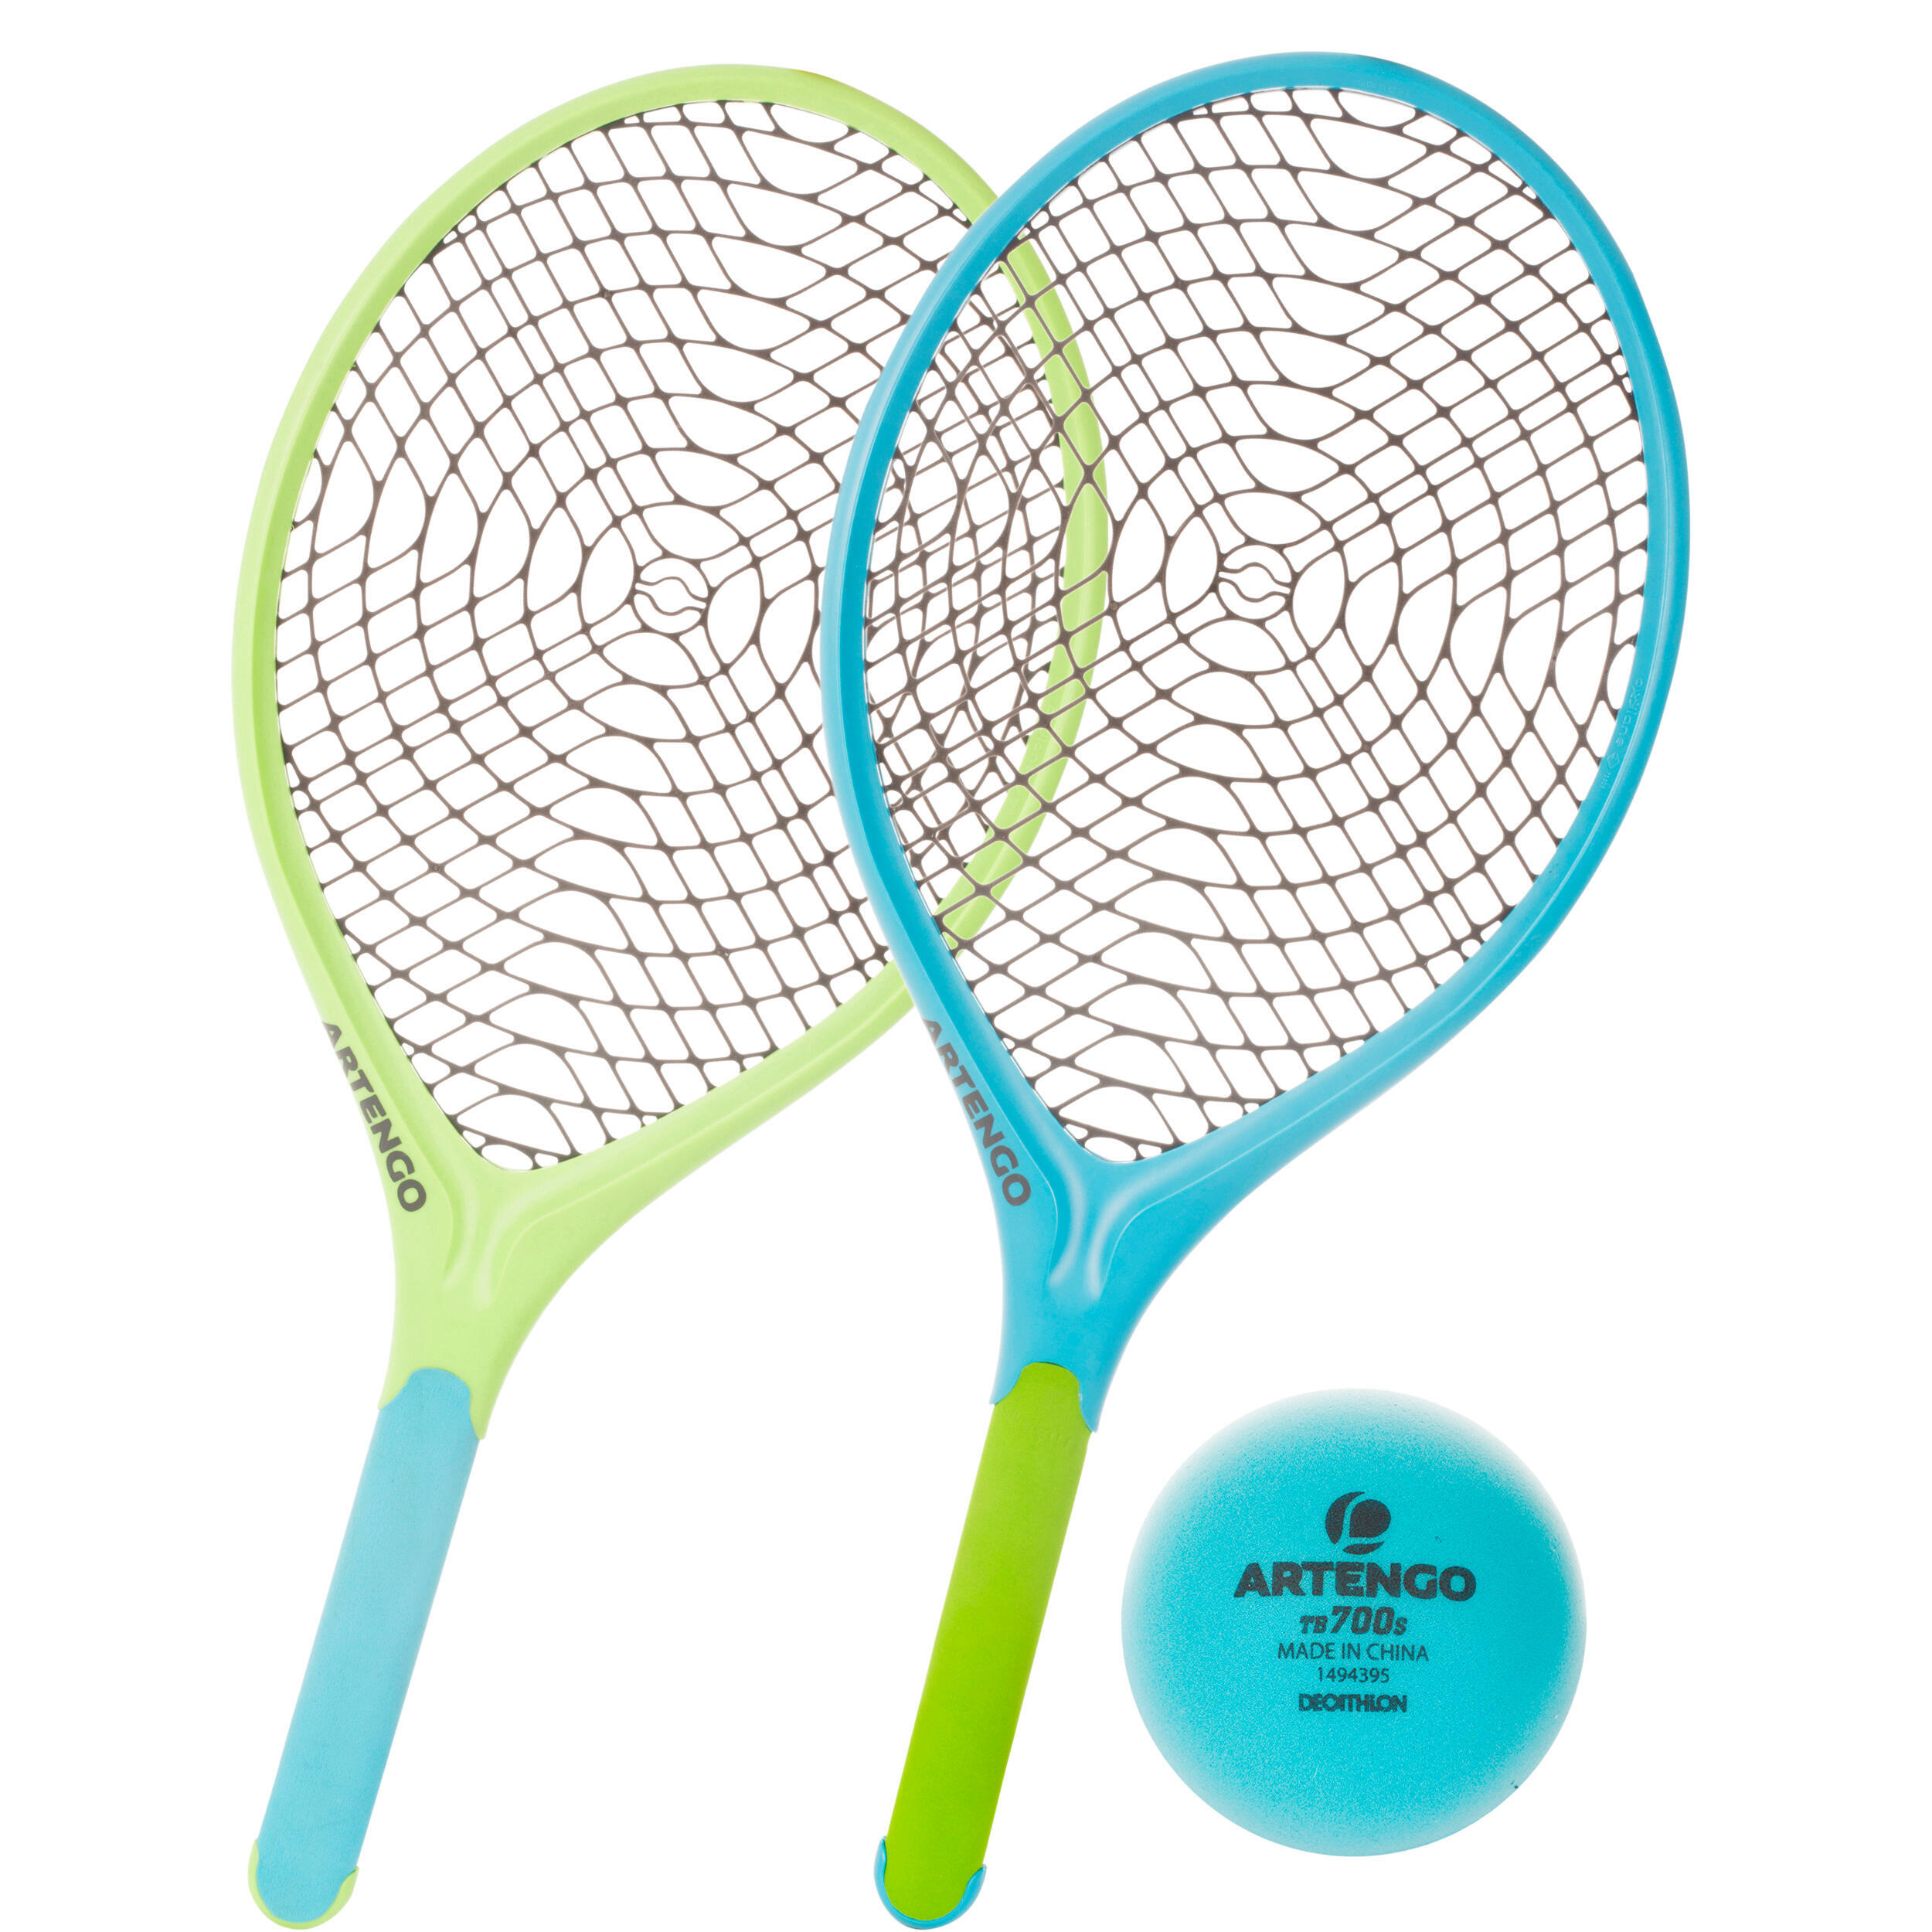 Теннисный набор Funyten 2 ракетки и 1 мяч синий/зеленый ARTENGO, лазурно-синий/неоново-зеленый